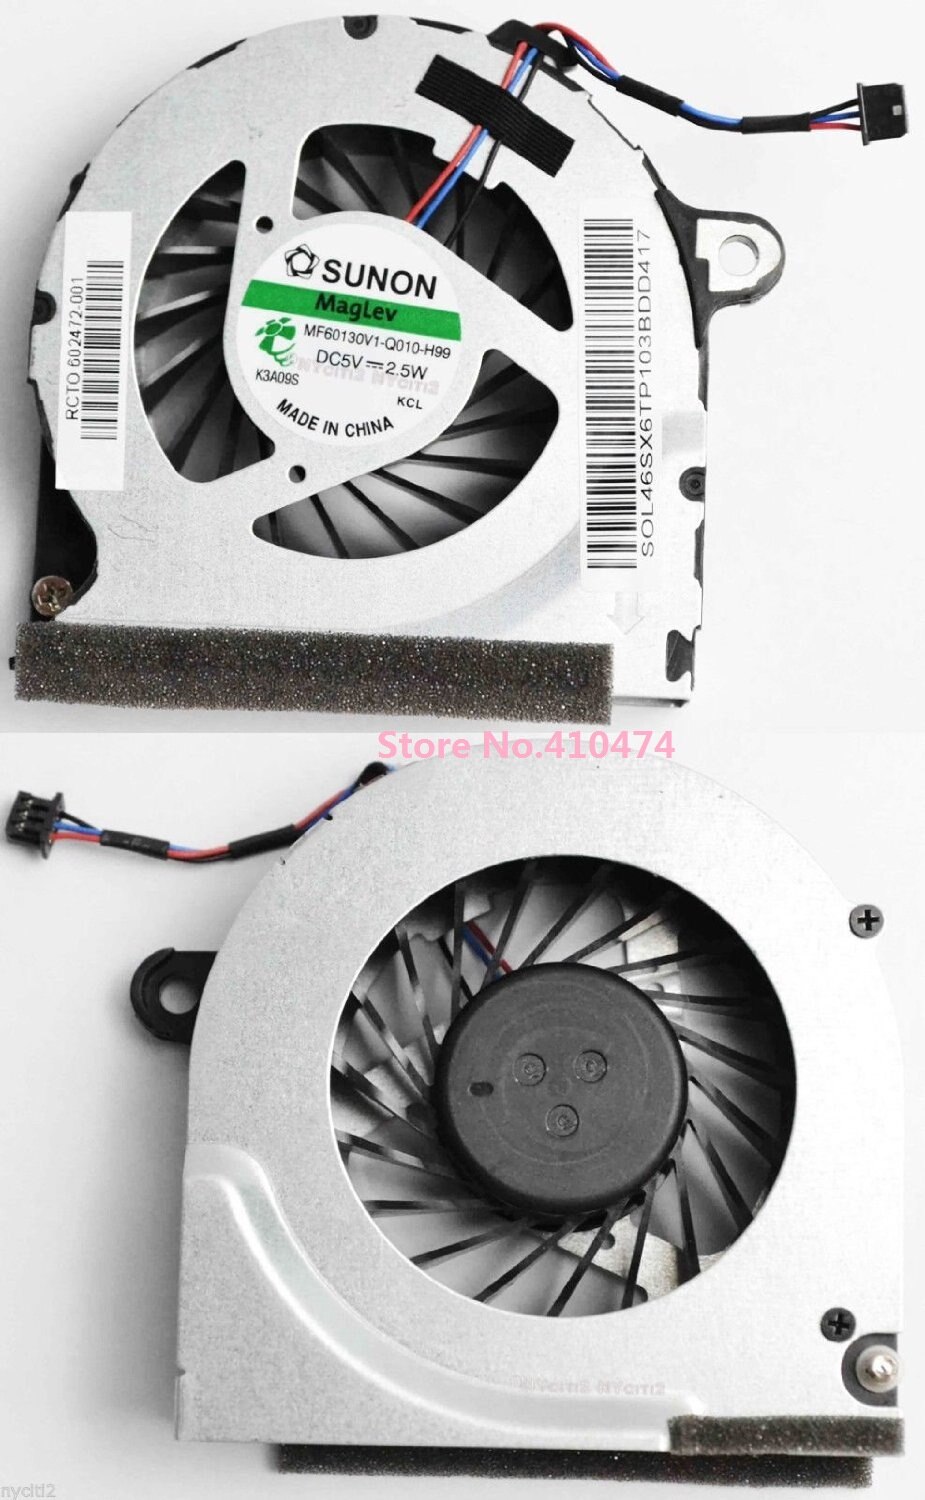 SSEA CPU Cooling Koeler Ventilator voor Hp Probook 4320 s 4321 s 4326 s 4420 s 4421 s 4426 s Laptop CPU Fan MF60130V1-Q010-H99 Gratis